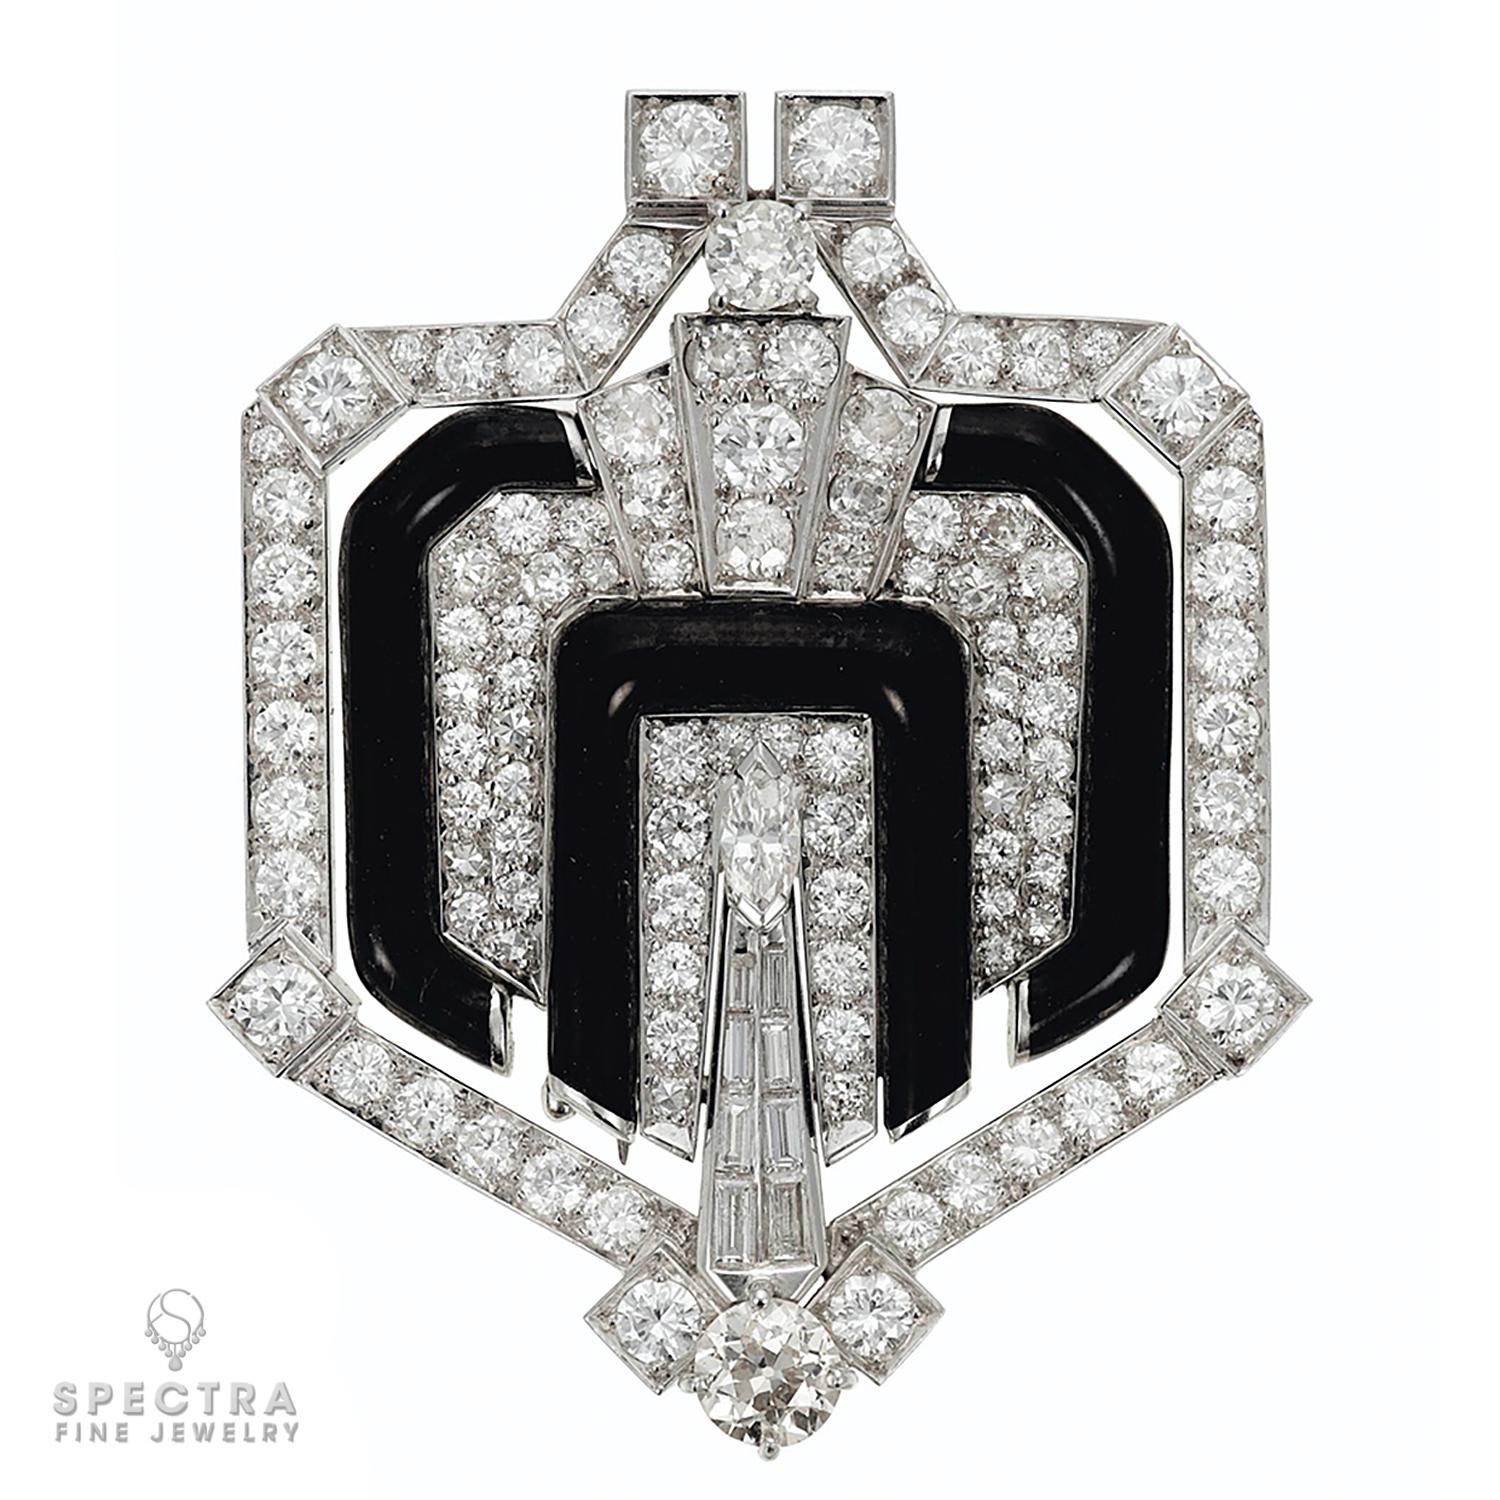 La broche en émail et diamants de David Webb est un chef-d'œuvre de luxe et de sophistication. Cette broche de facture exquise affiche un design époustouflant qui associe parfaitement des matériaux de haute qualité et des pierres précieuses